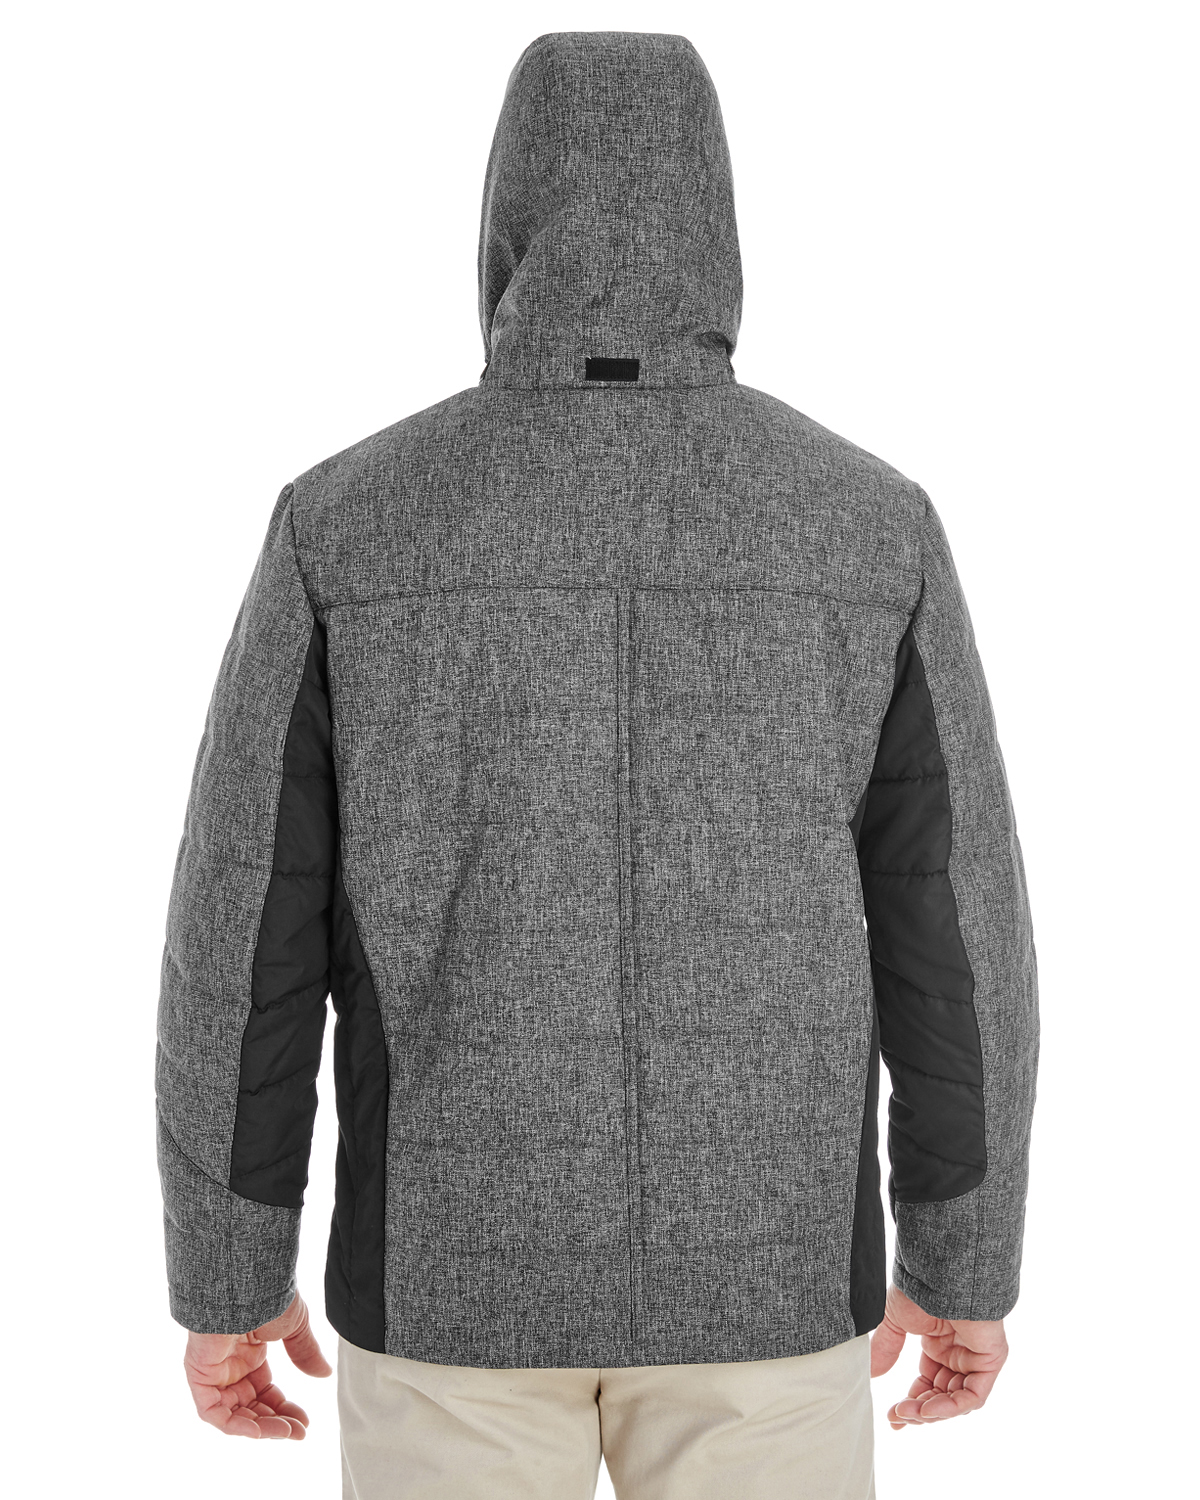 Devon & Jones DG710 - Men's Midtown Insulated Fabric-Block Jacket with Crosshatch Melange